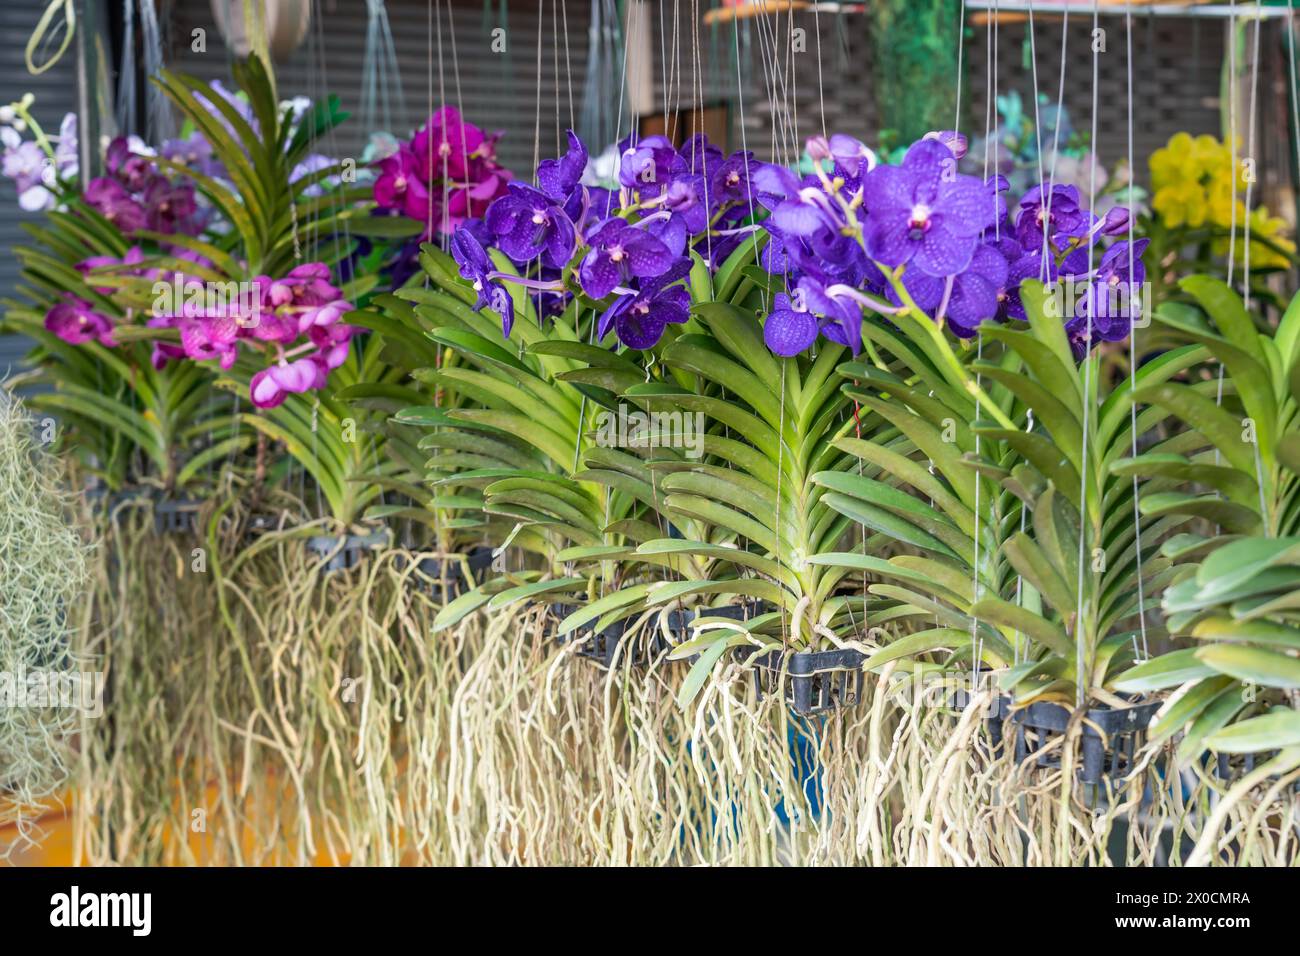 Bellissime orchidee kaufen di vanda orchidee con bellissimi fiori e foglie verdi. Molti colori diversi sono esposti in un giardino centrale. Foto Stock